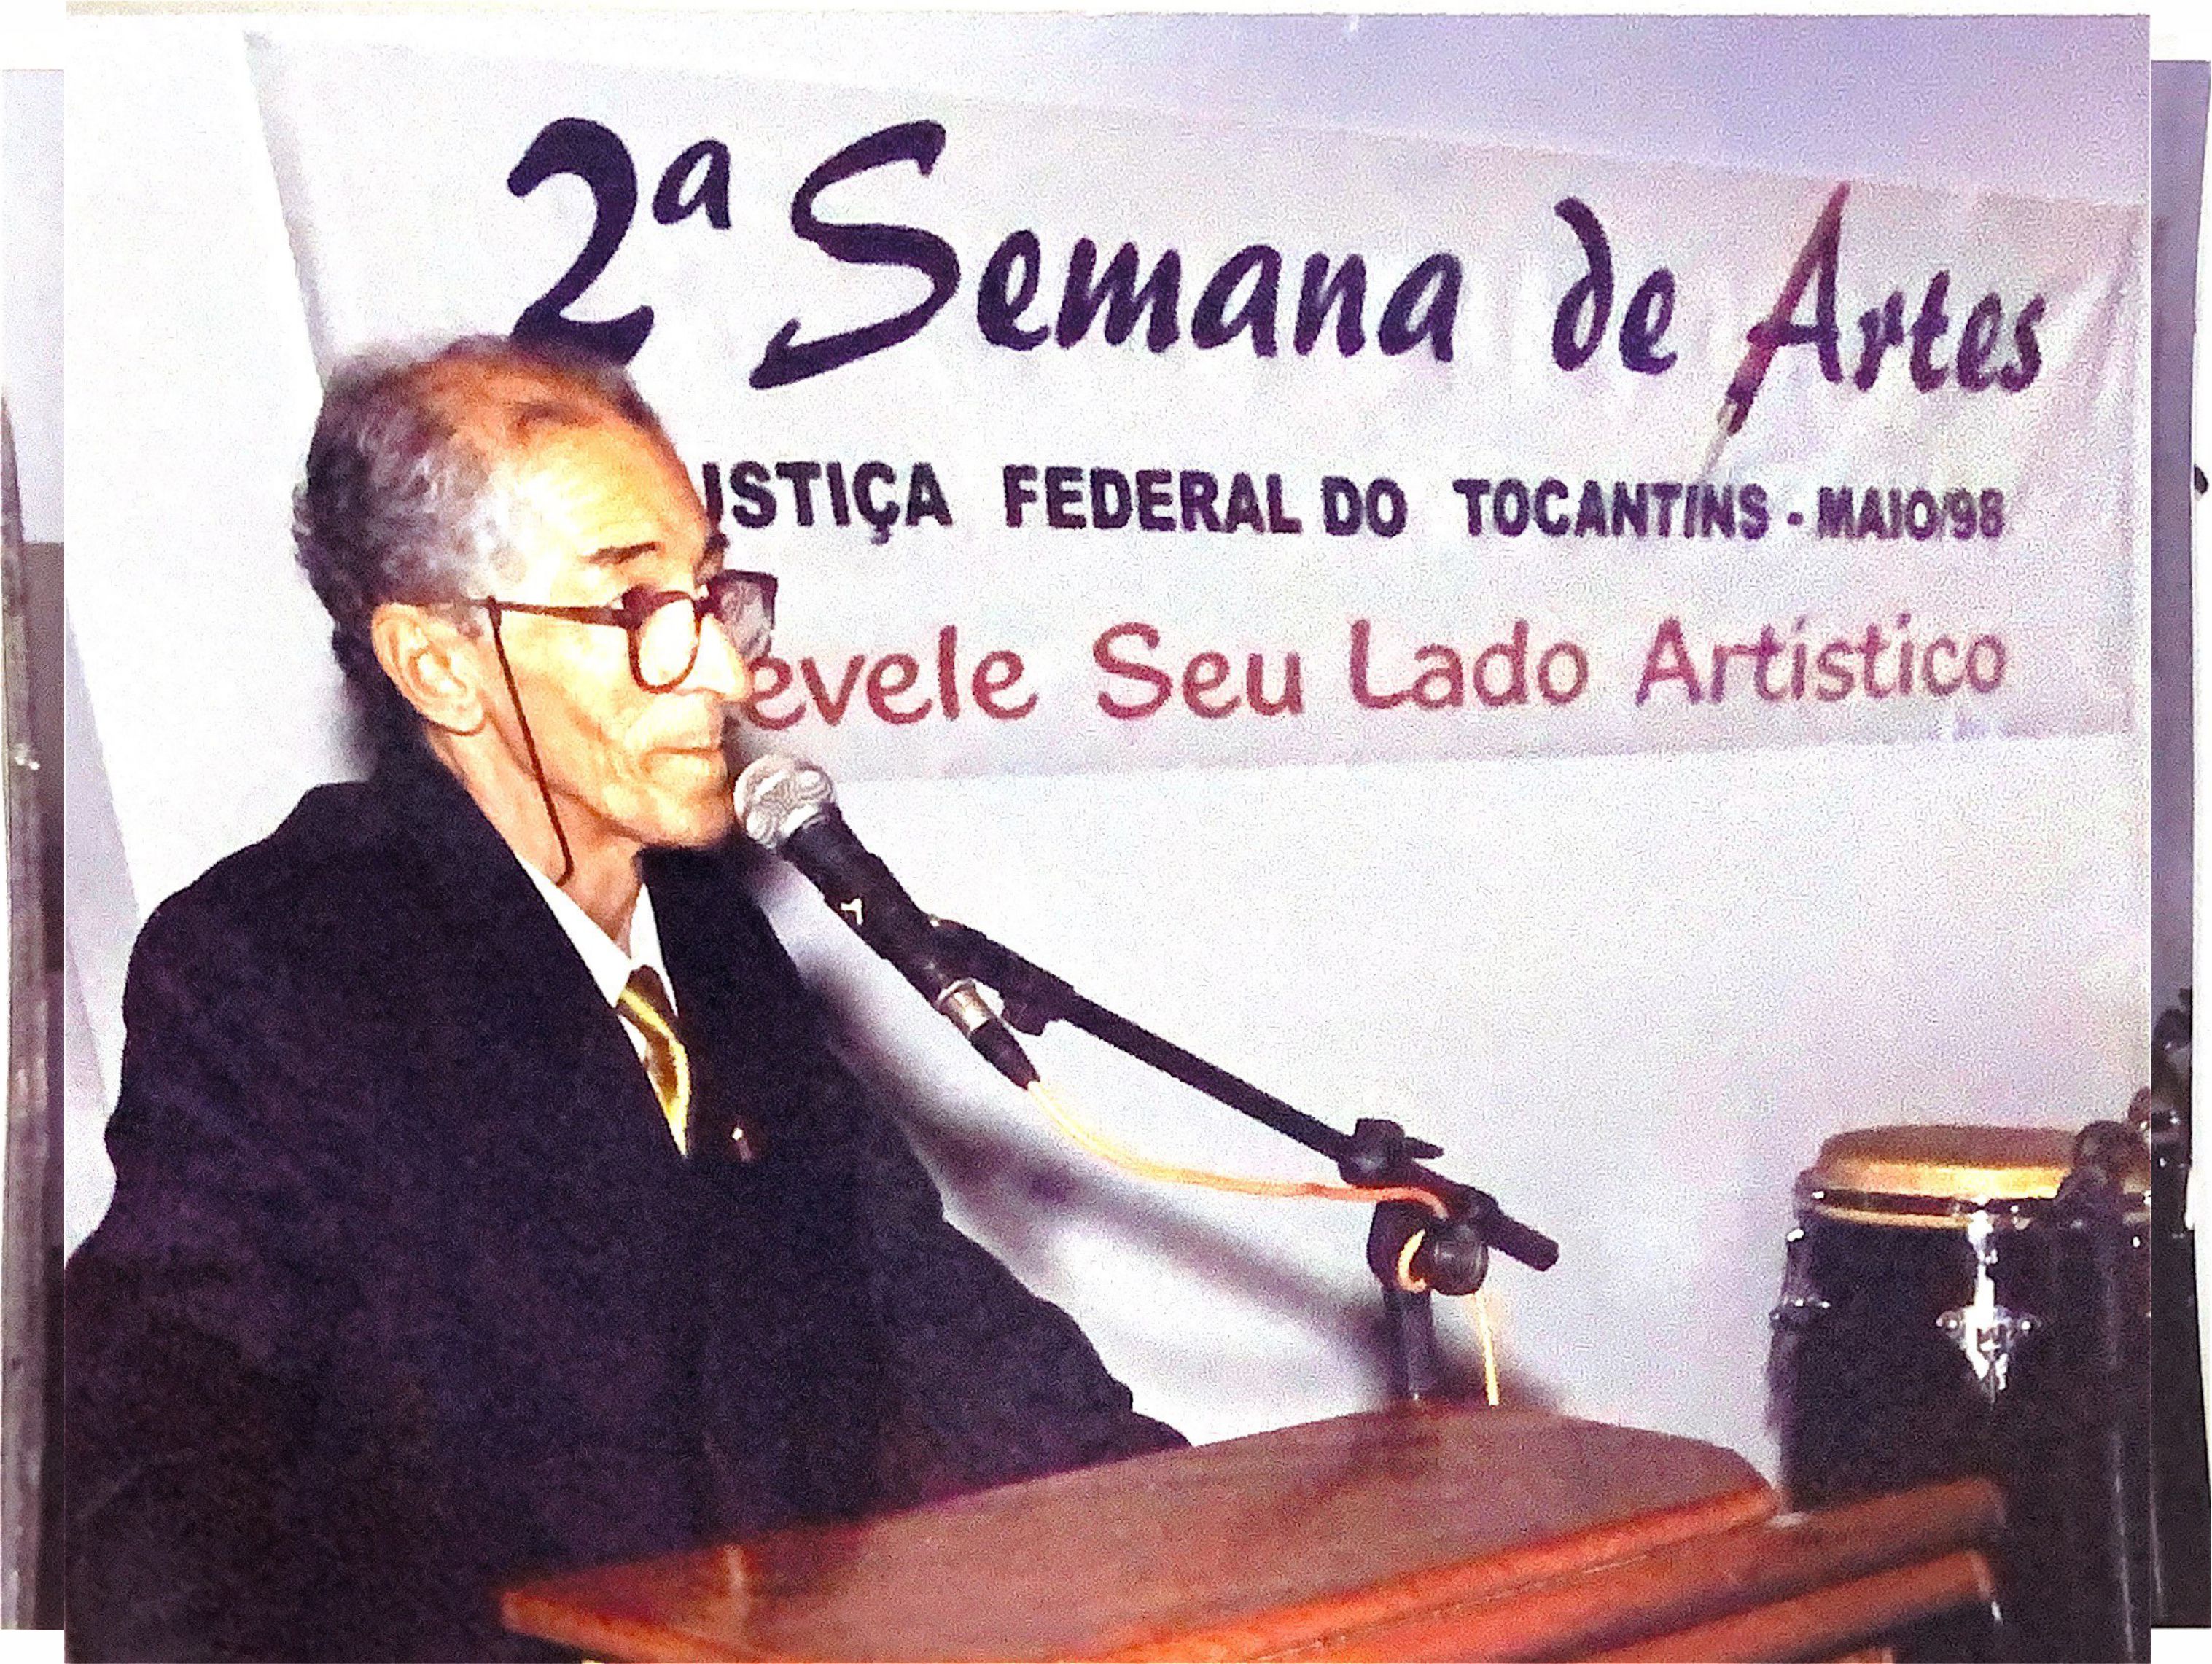 Um dos maiores nomes da cultura no Estado, José Gomes Sobrinho é homenageado pela Justiça Federal do Tocantins - Foto: Divulgação